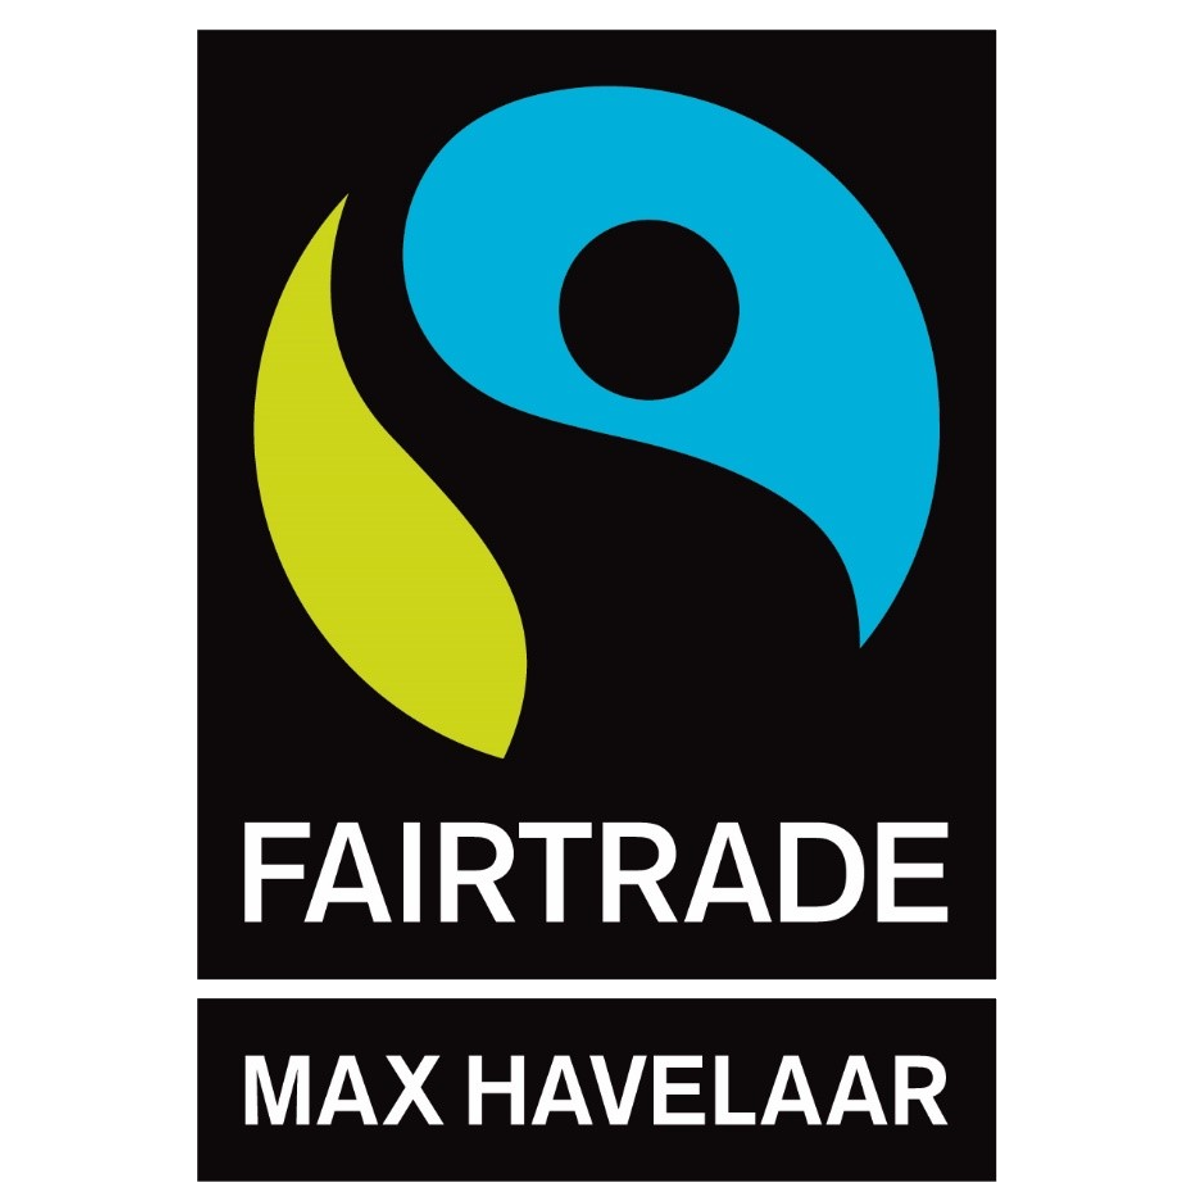 Label Max Havelaar - FairTrade